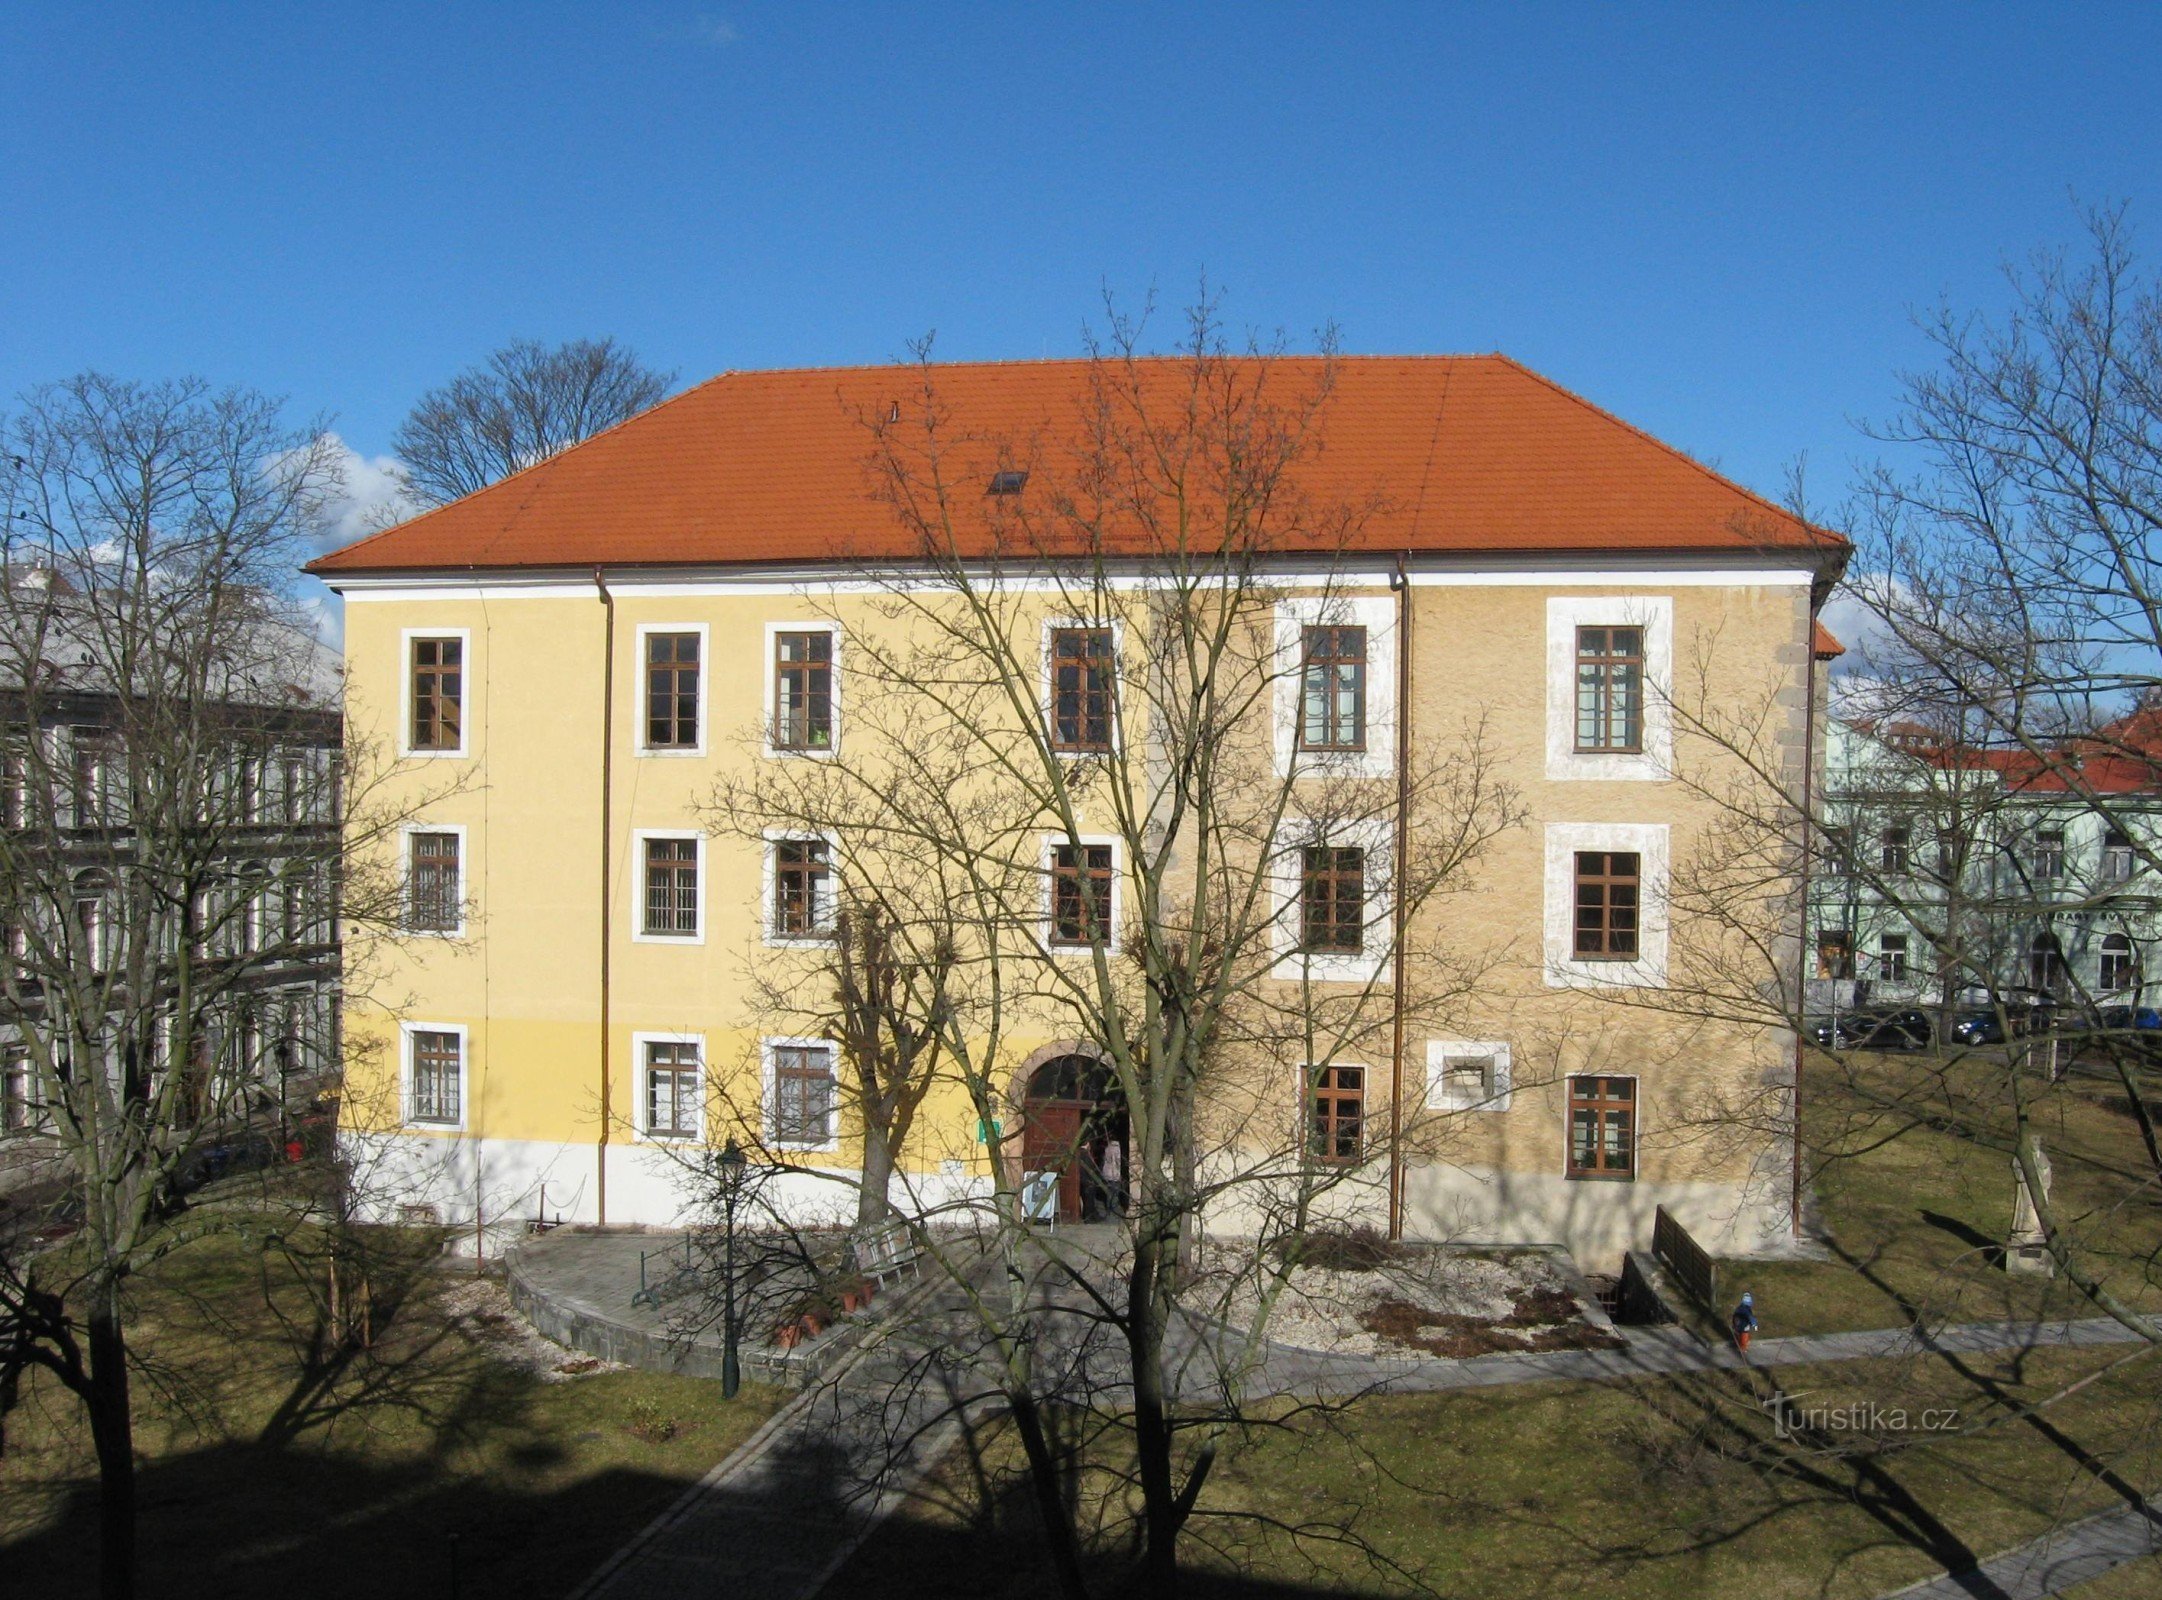 Castle - Ernestinum (c) archive of the Příbram Municipal Office